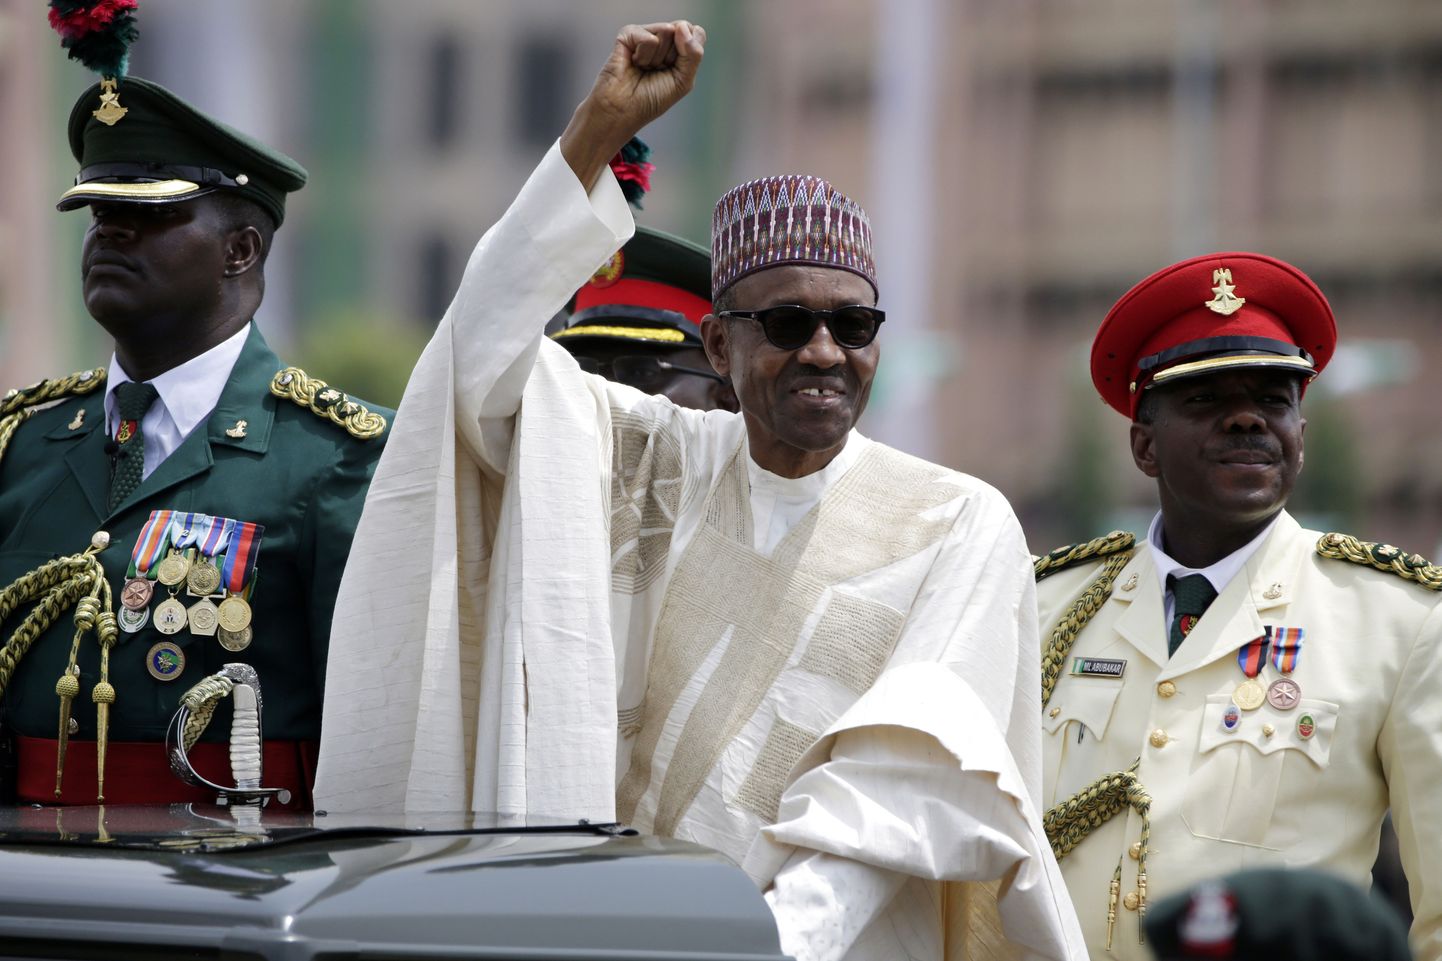 Nigeeria president Muhammadu Buhari